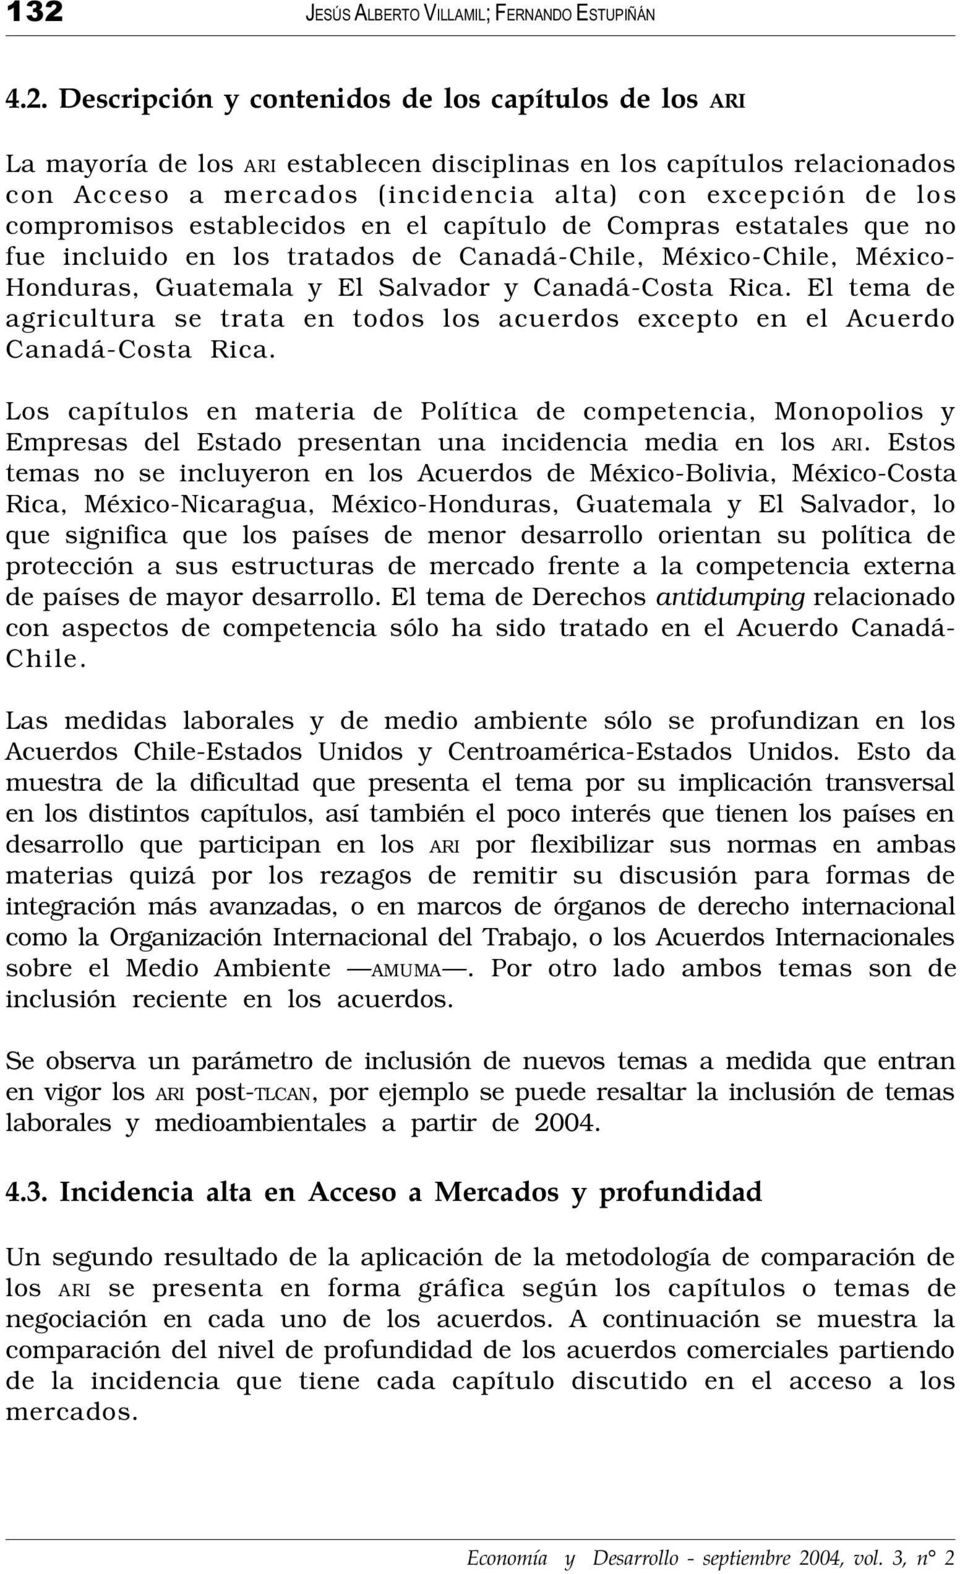 Salvador y Canadá-Costa Rica. El tema de agricultura se trata en todos los acuerdos excepto en el Acuerdo Canadá-Costa Rica.